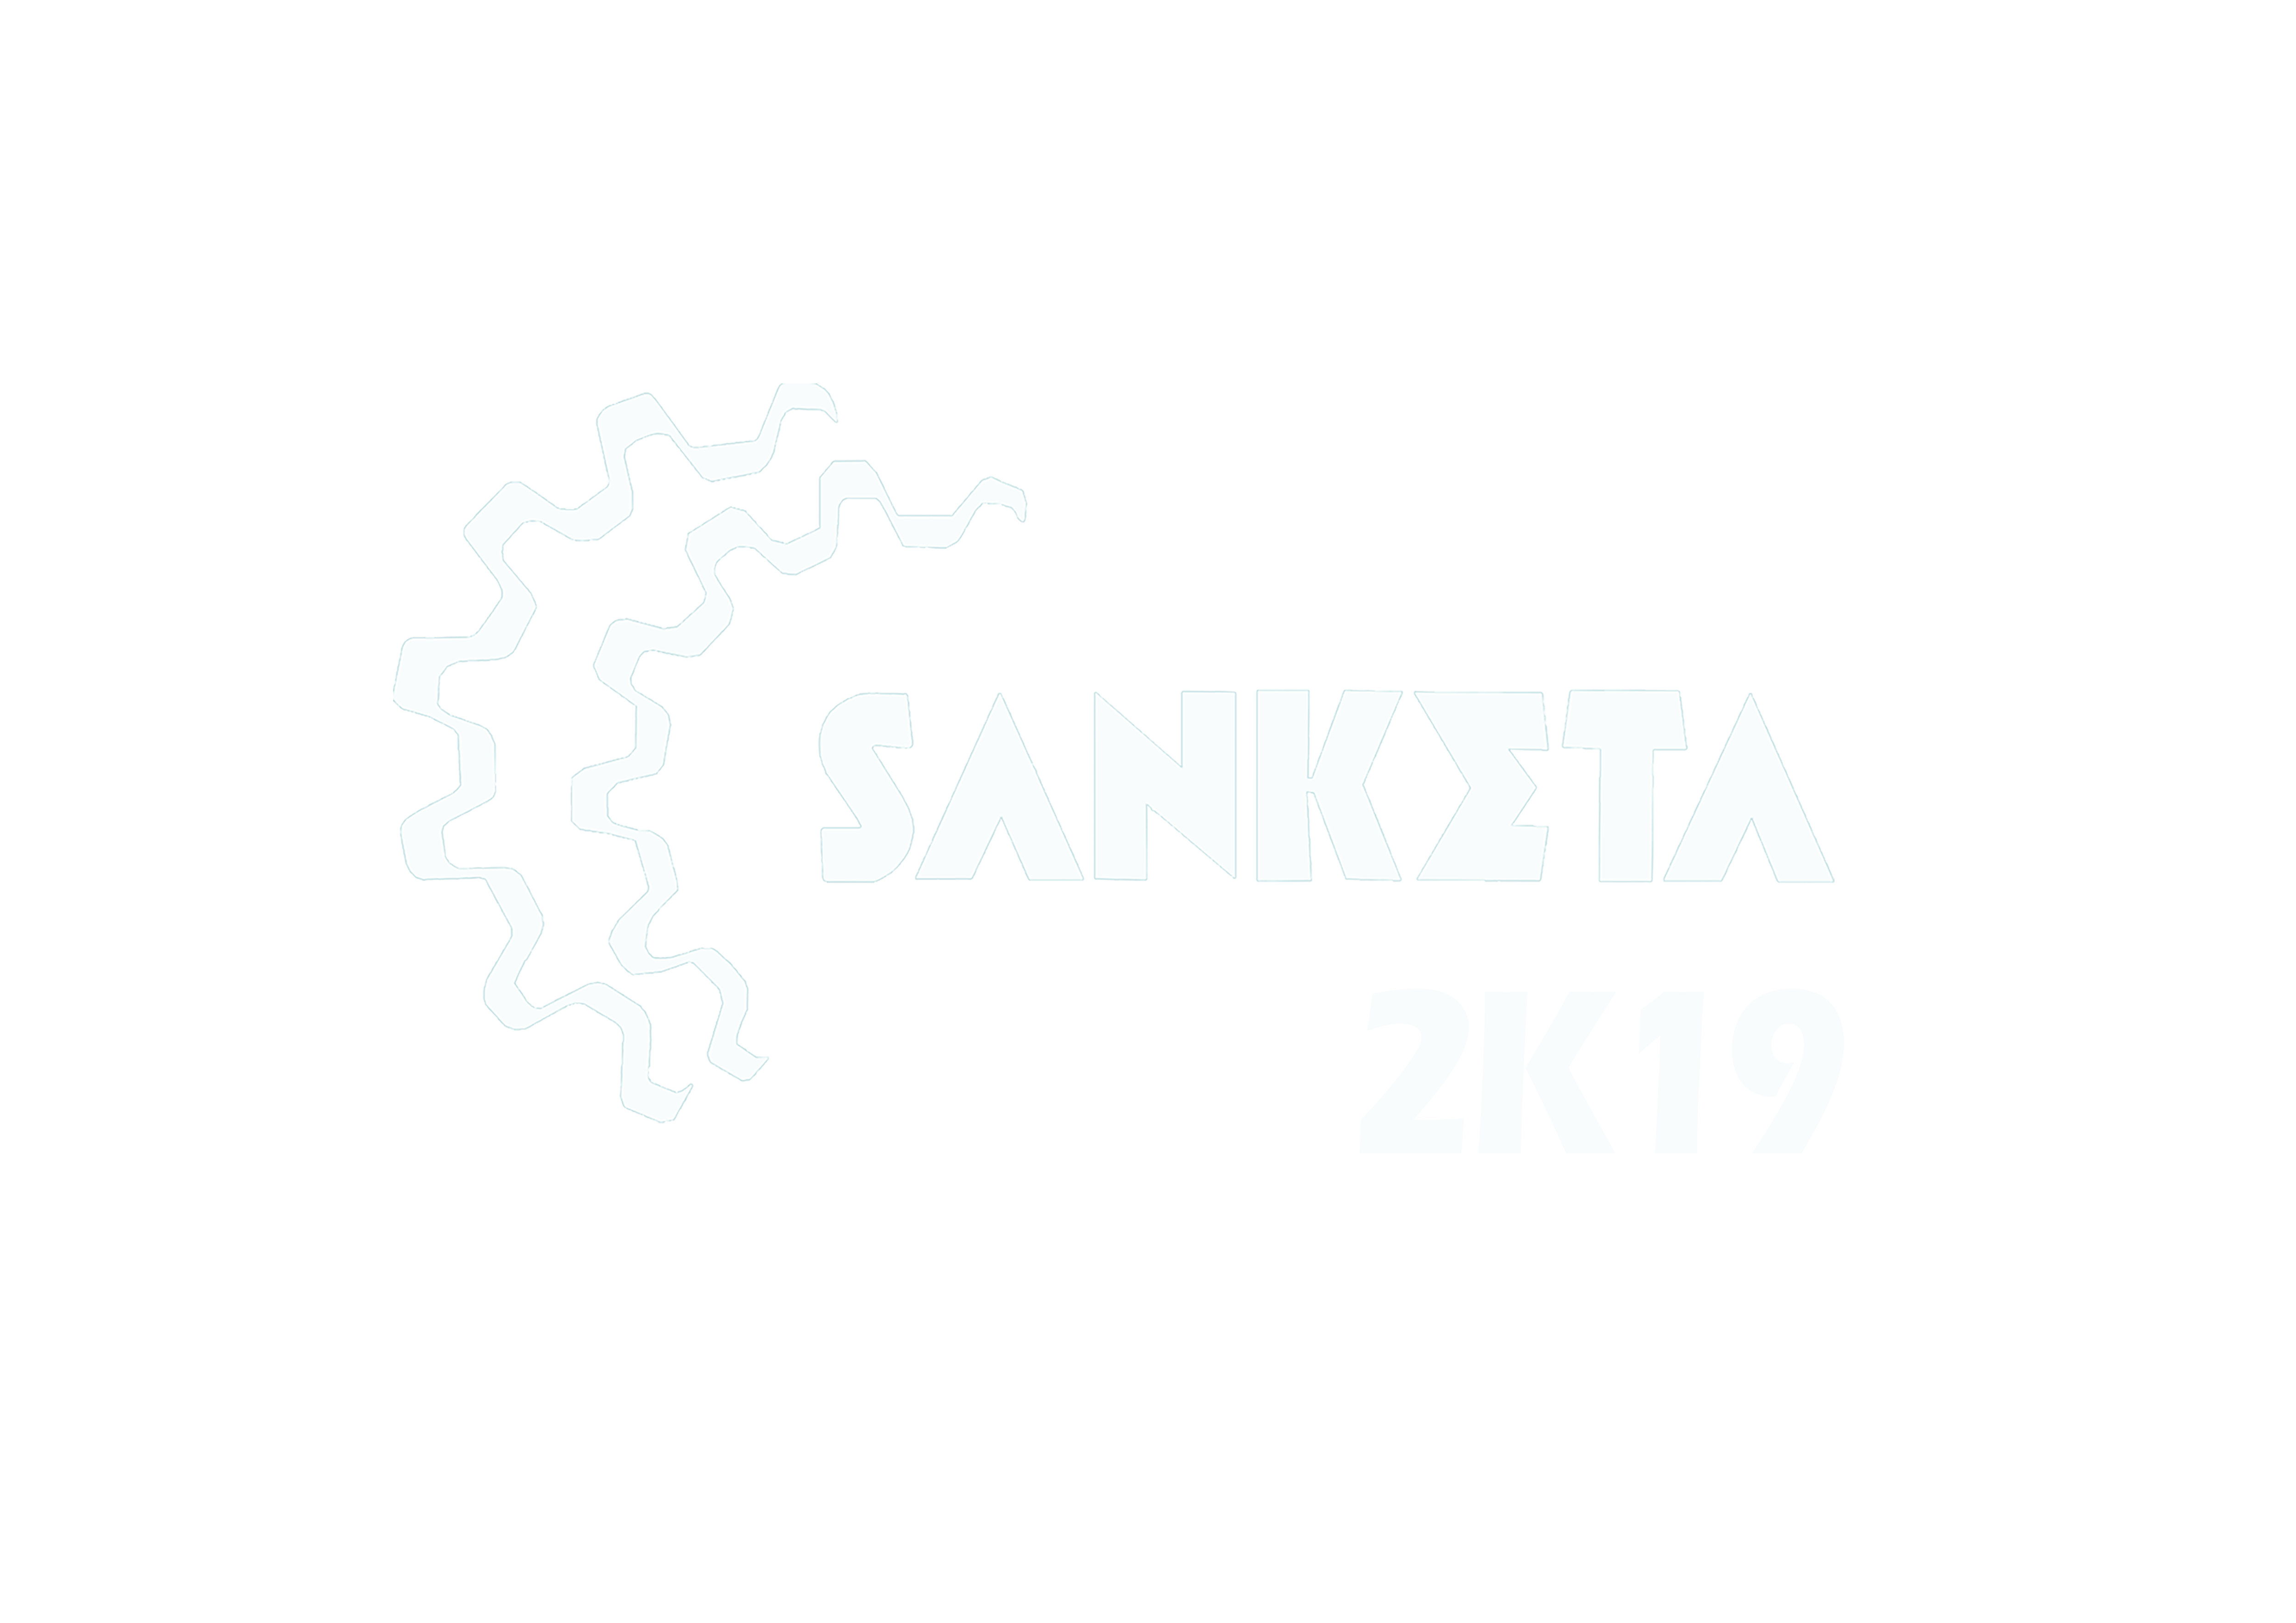 SANKETA 2K19